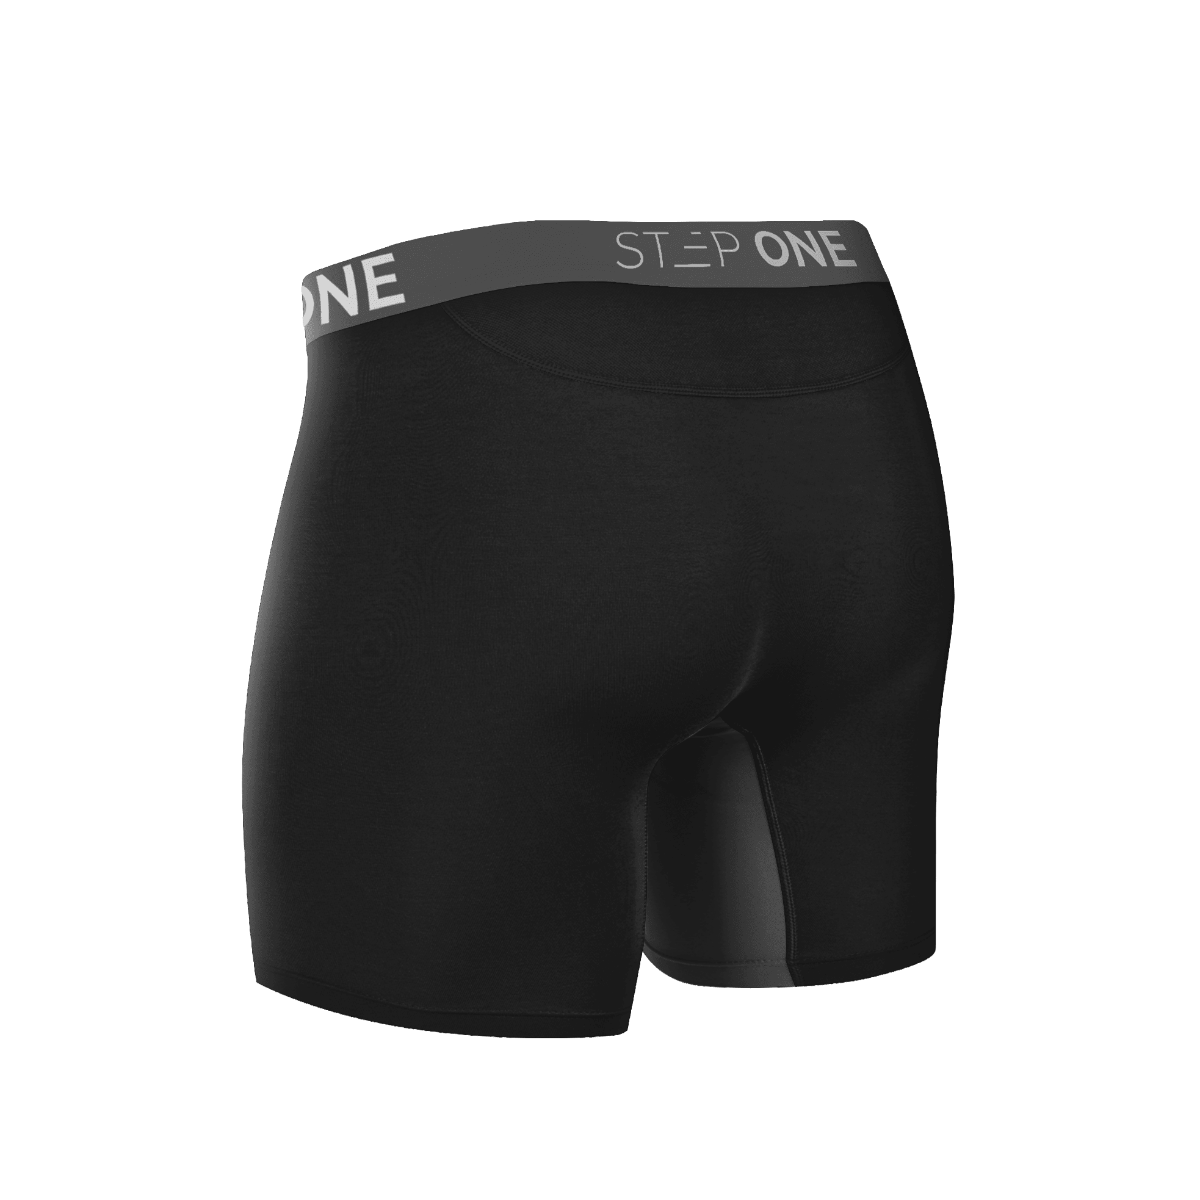 Buy Men's Underwear Online in Australia